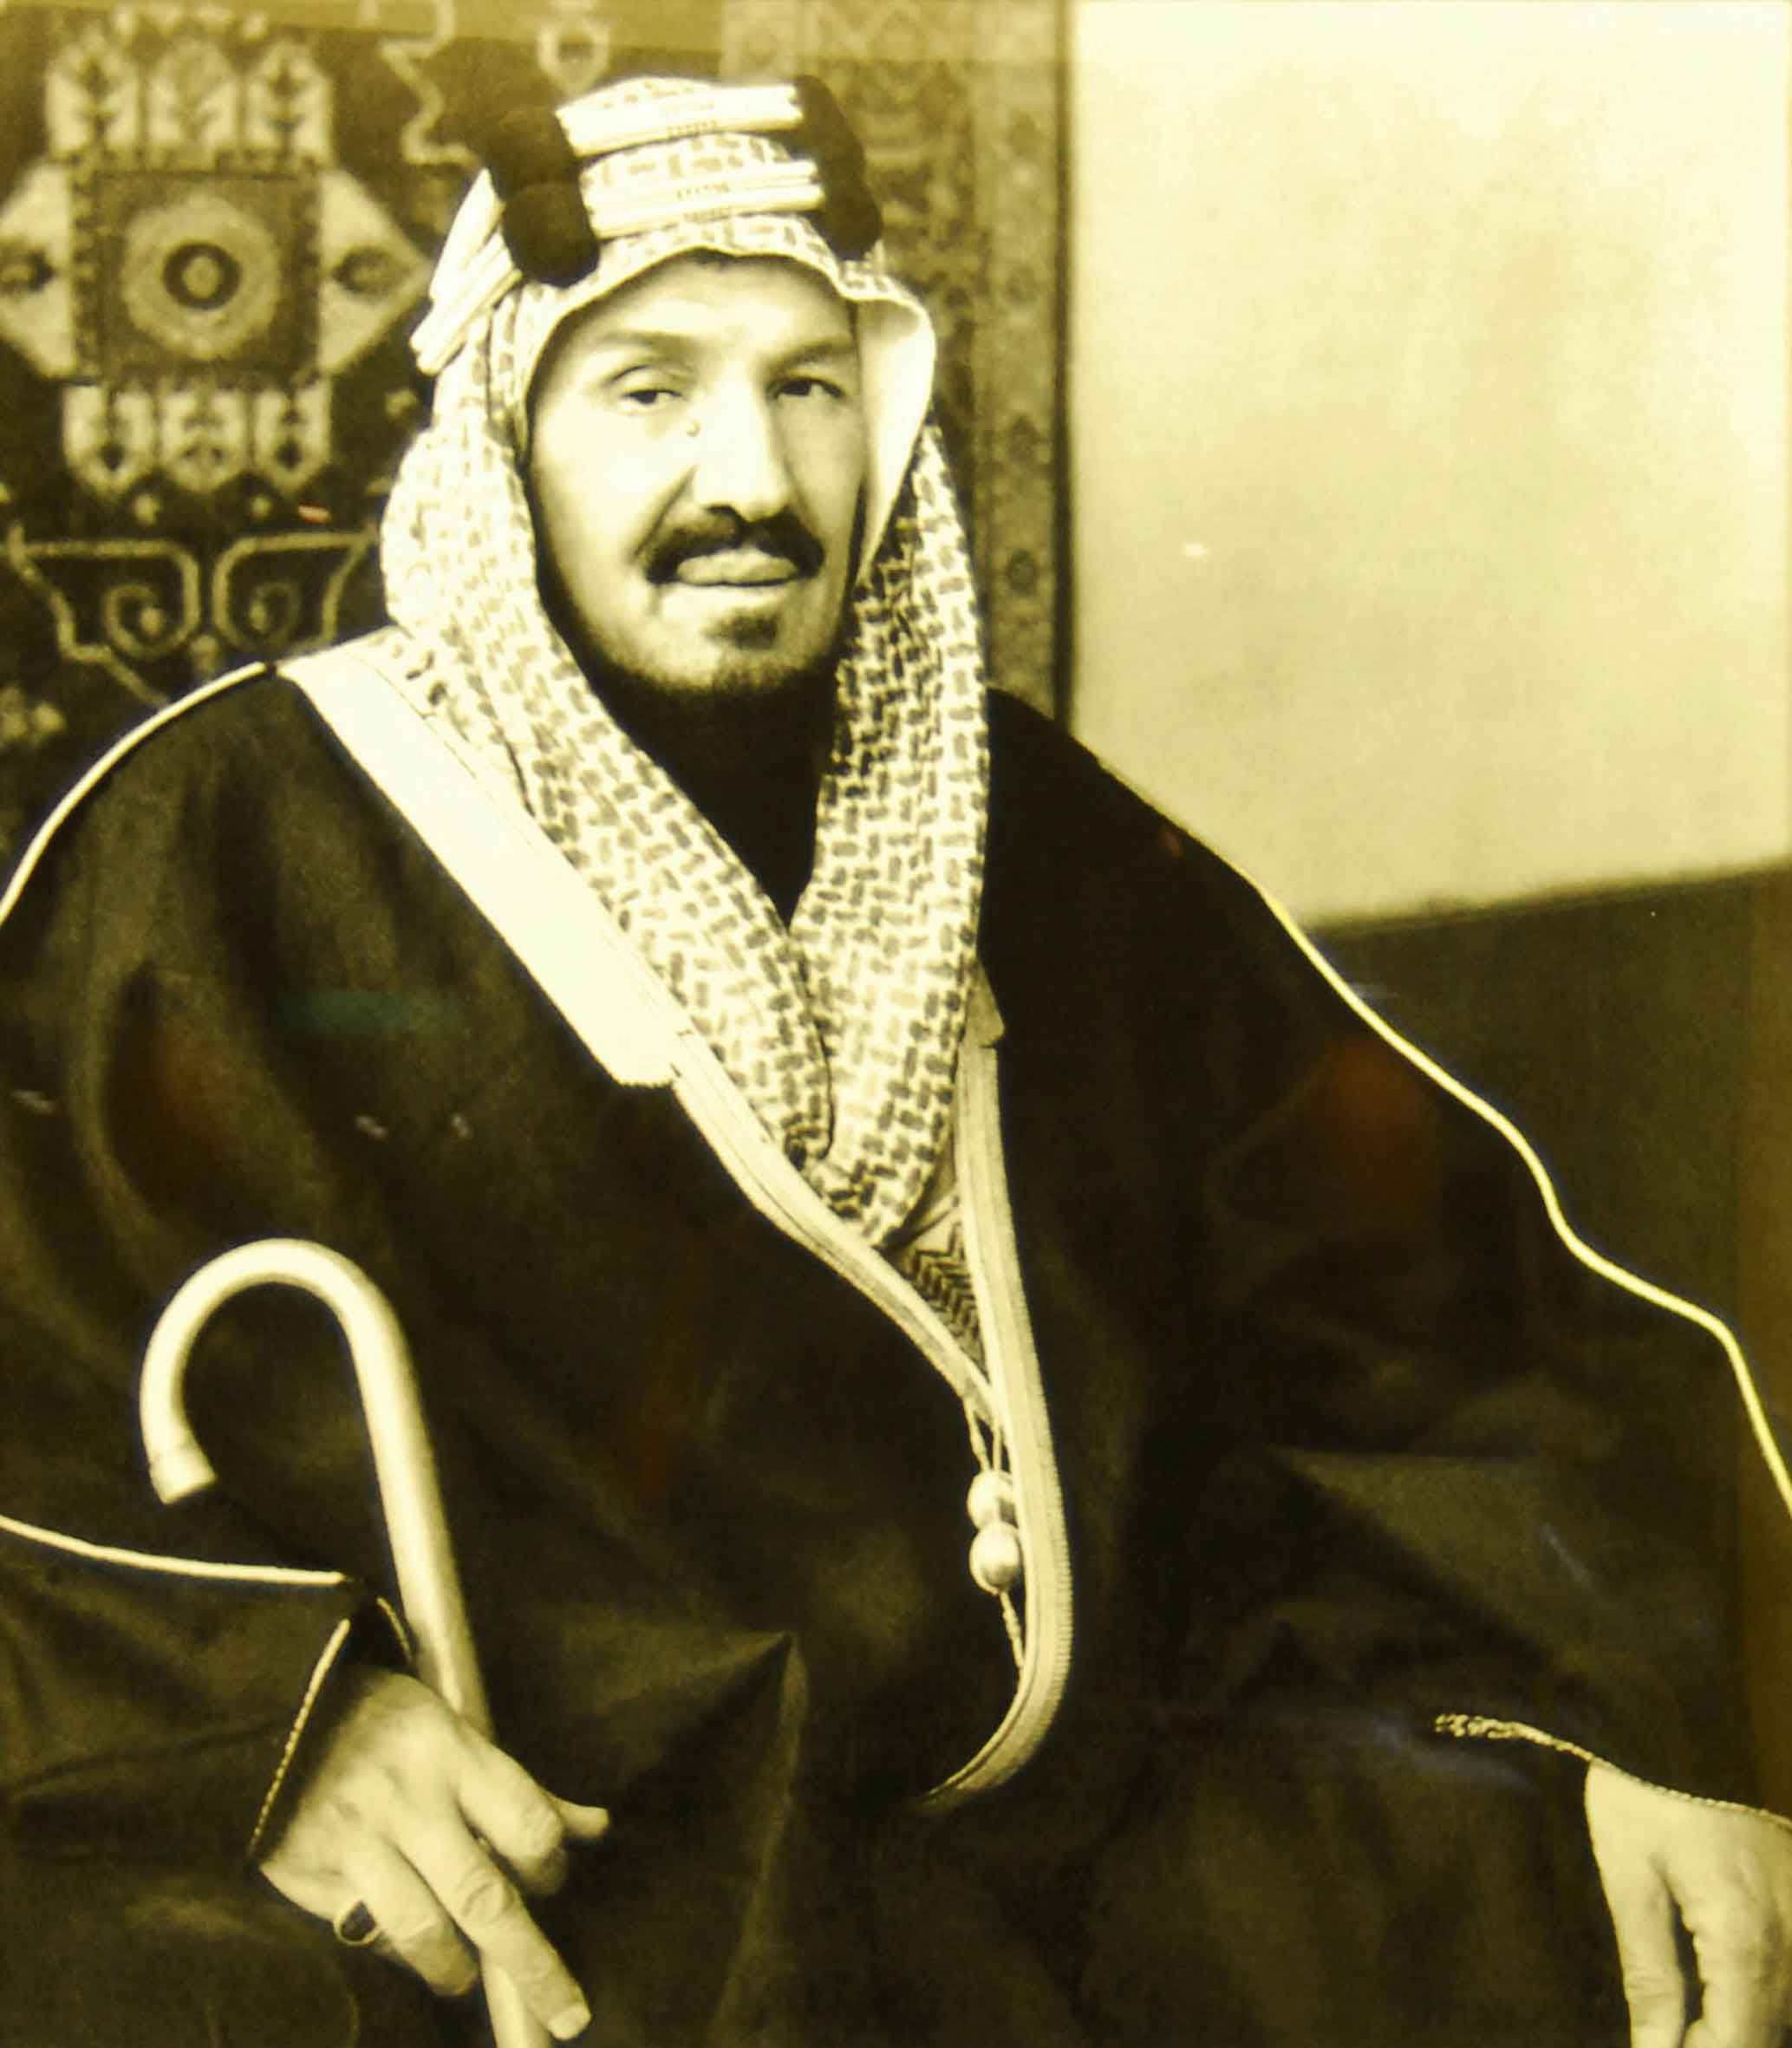 اُصدر الامر الملكي بتسمية الوطن بالمملكة العربية السعودية في عام